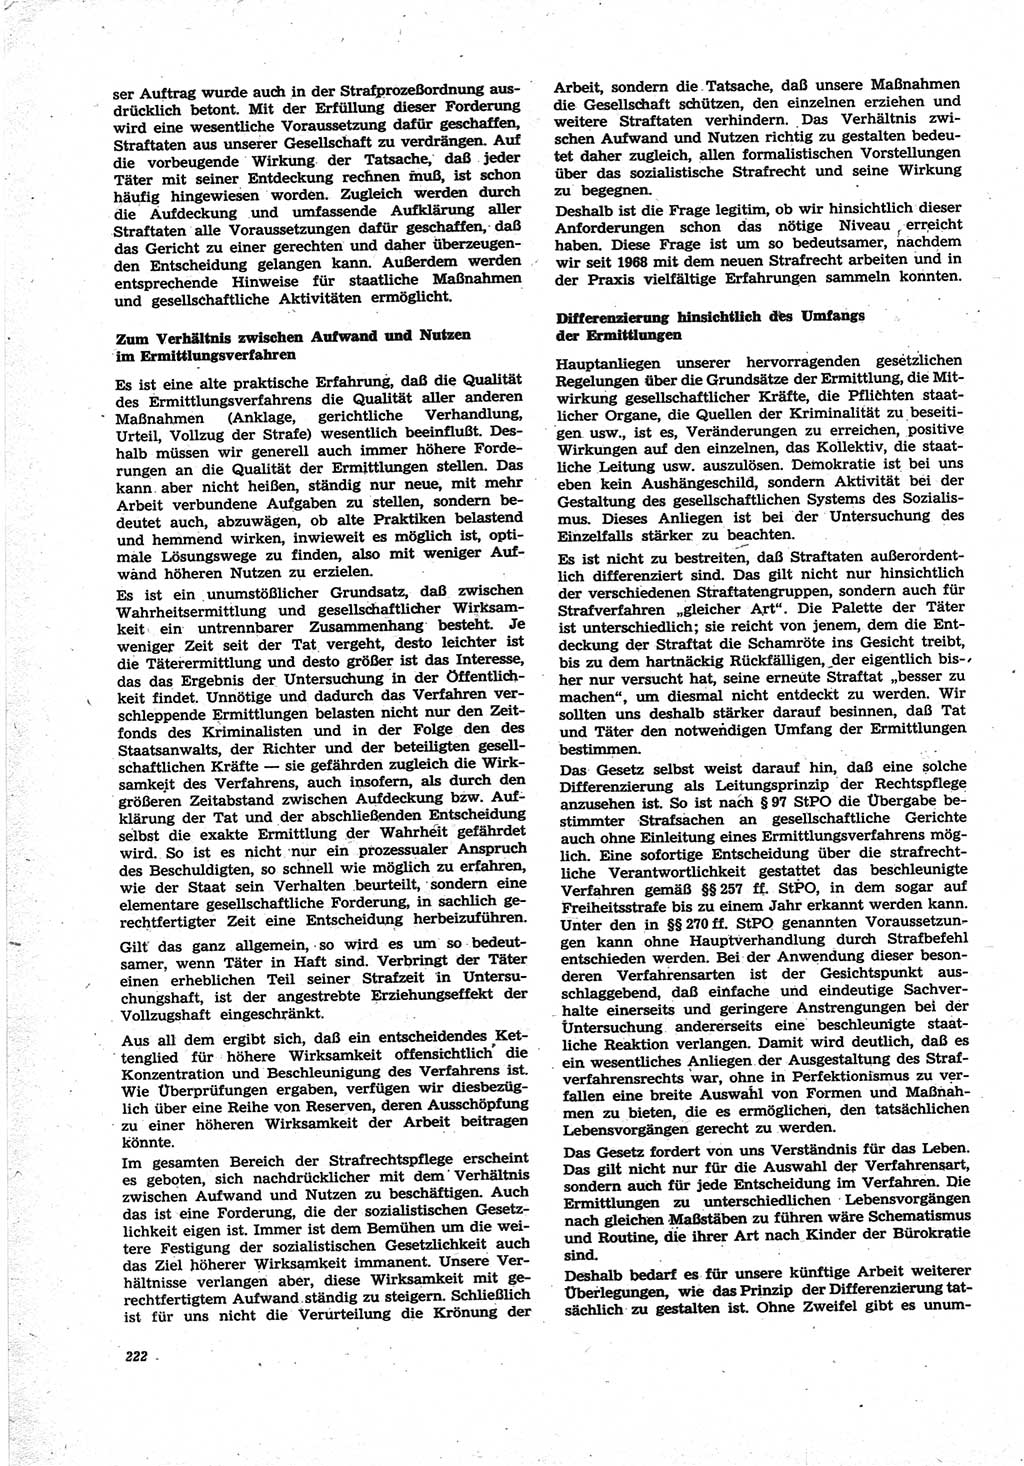 Neue Justiz (NJ), Zeitschrift für Recht und Rechtswissenschaft [Deutsche Demokratische Republik (DDR)], 25. Jahrgang 1971, Seite 222 (NJ DDR 1971, S. 222)